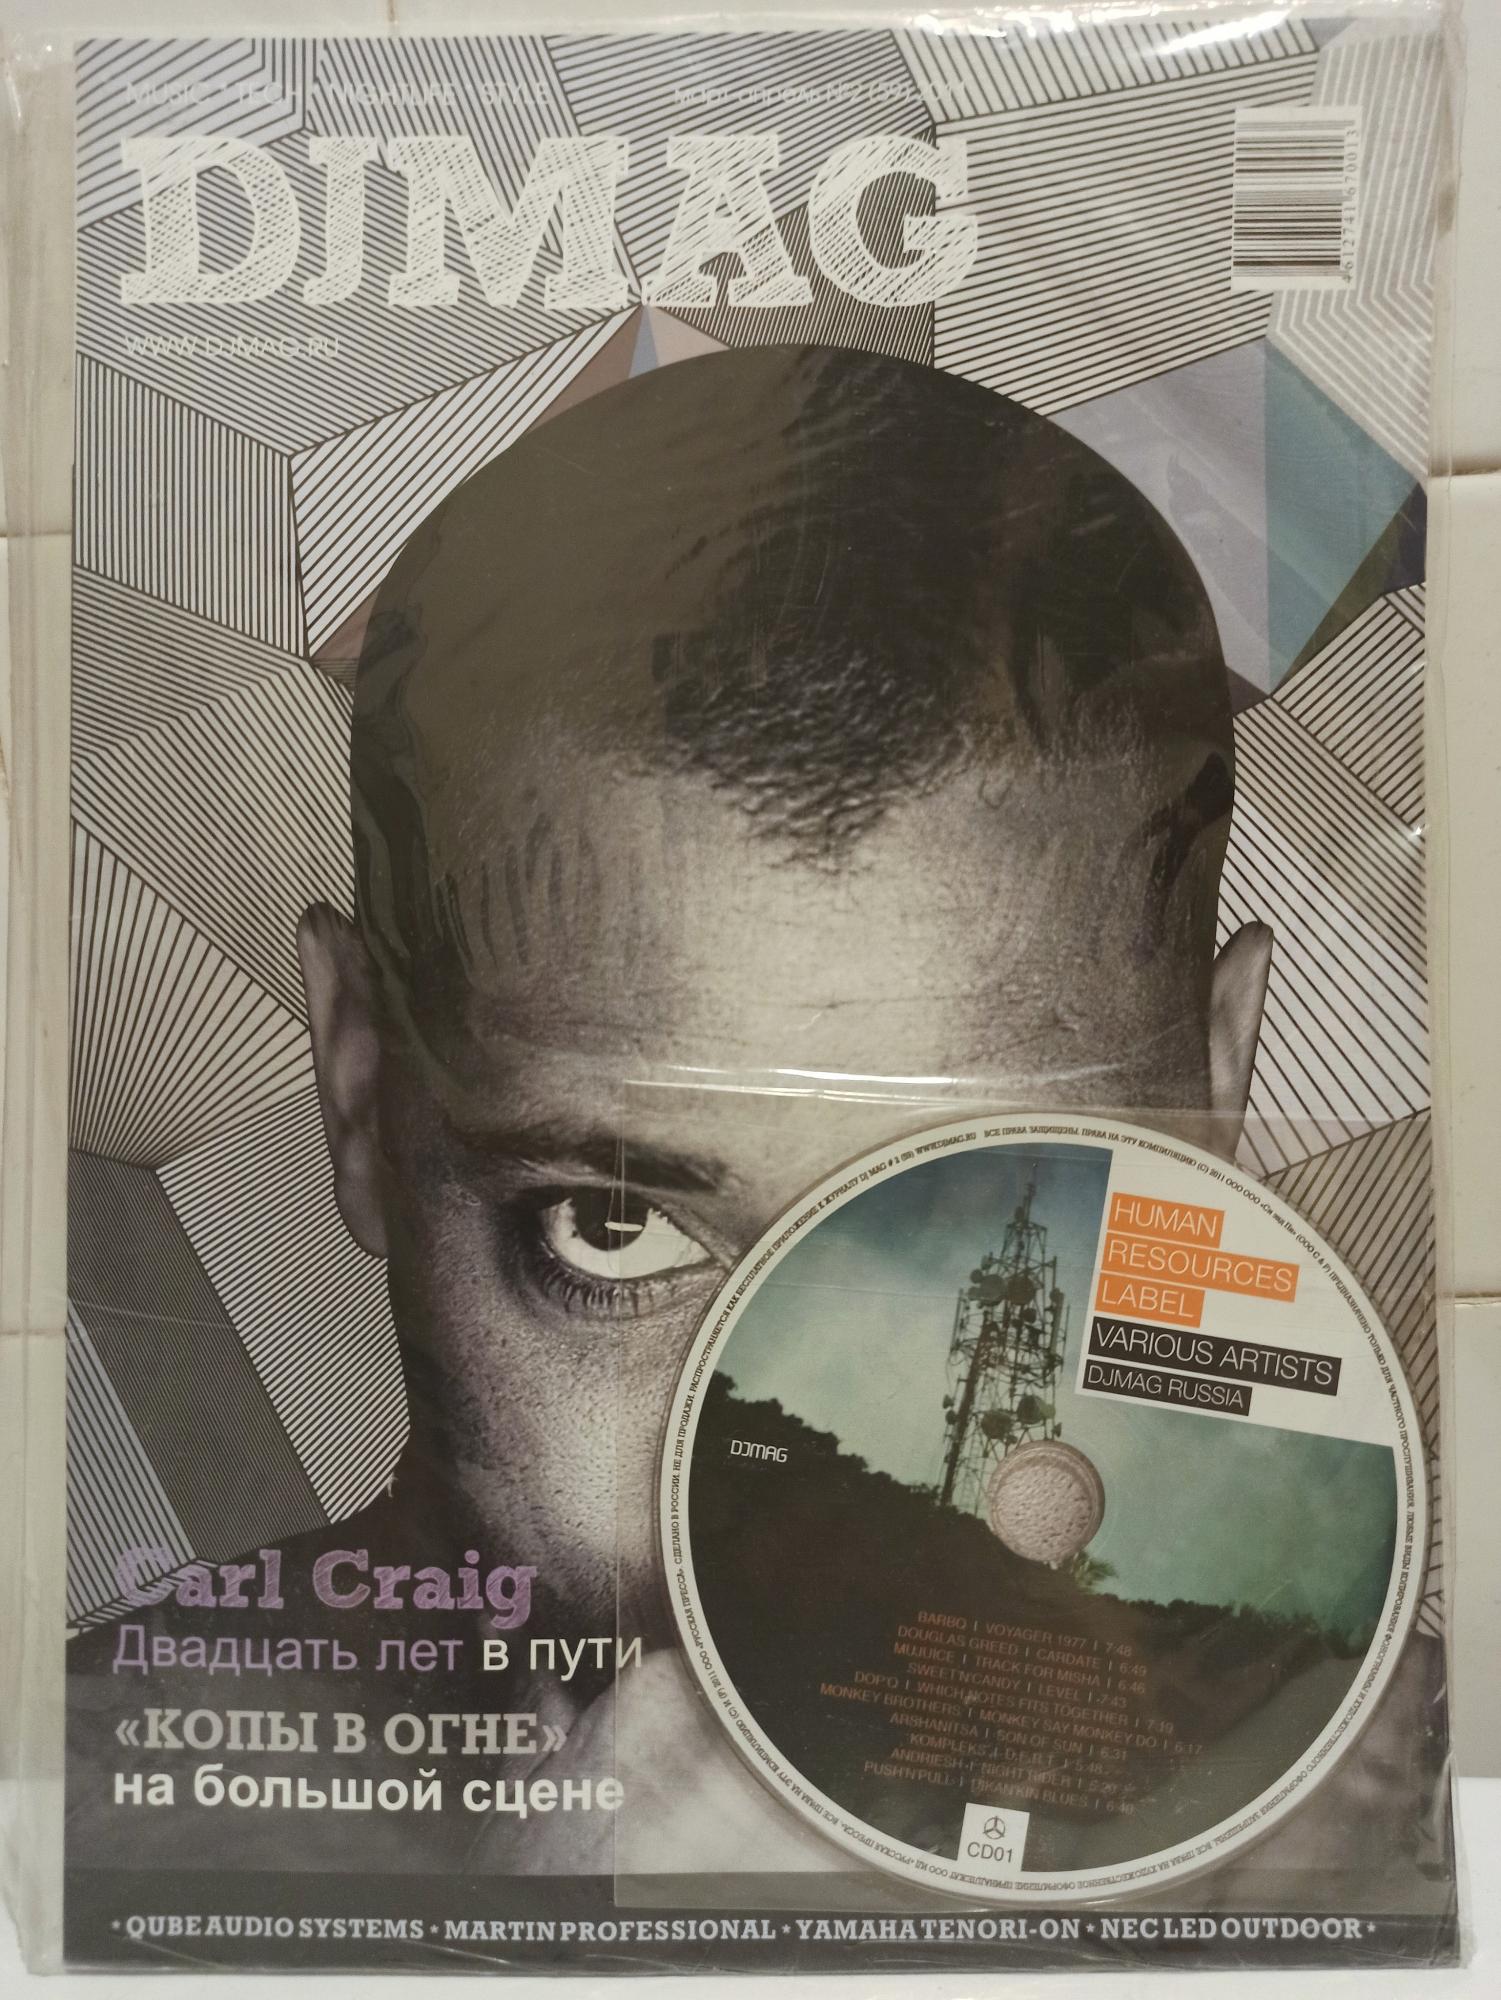 Дж журнал. Журнал djmag январь 2014 скан.